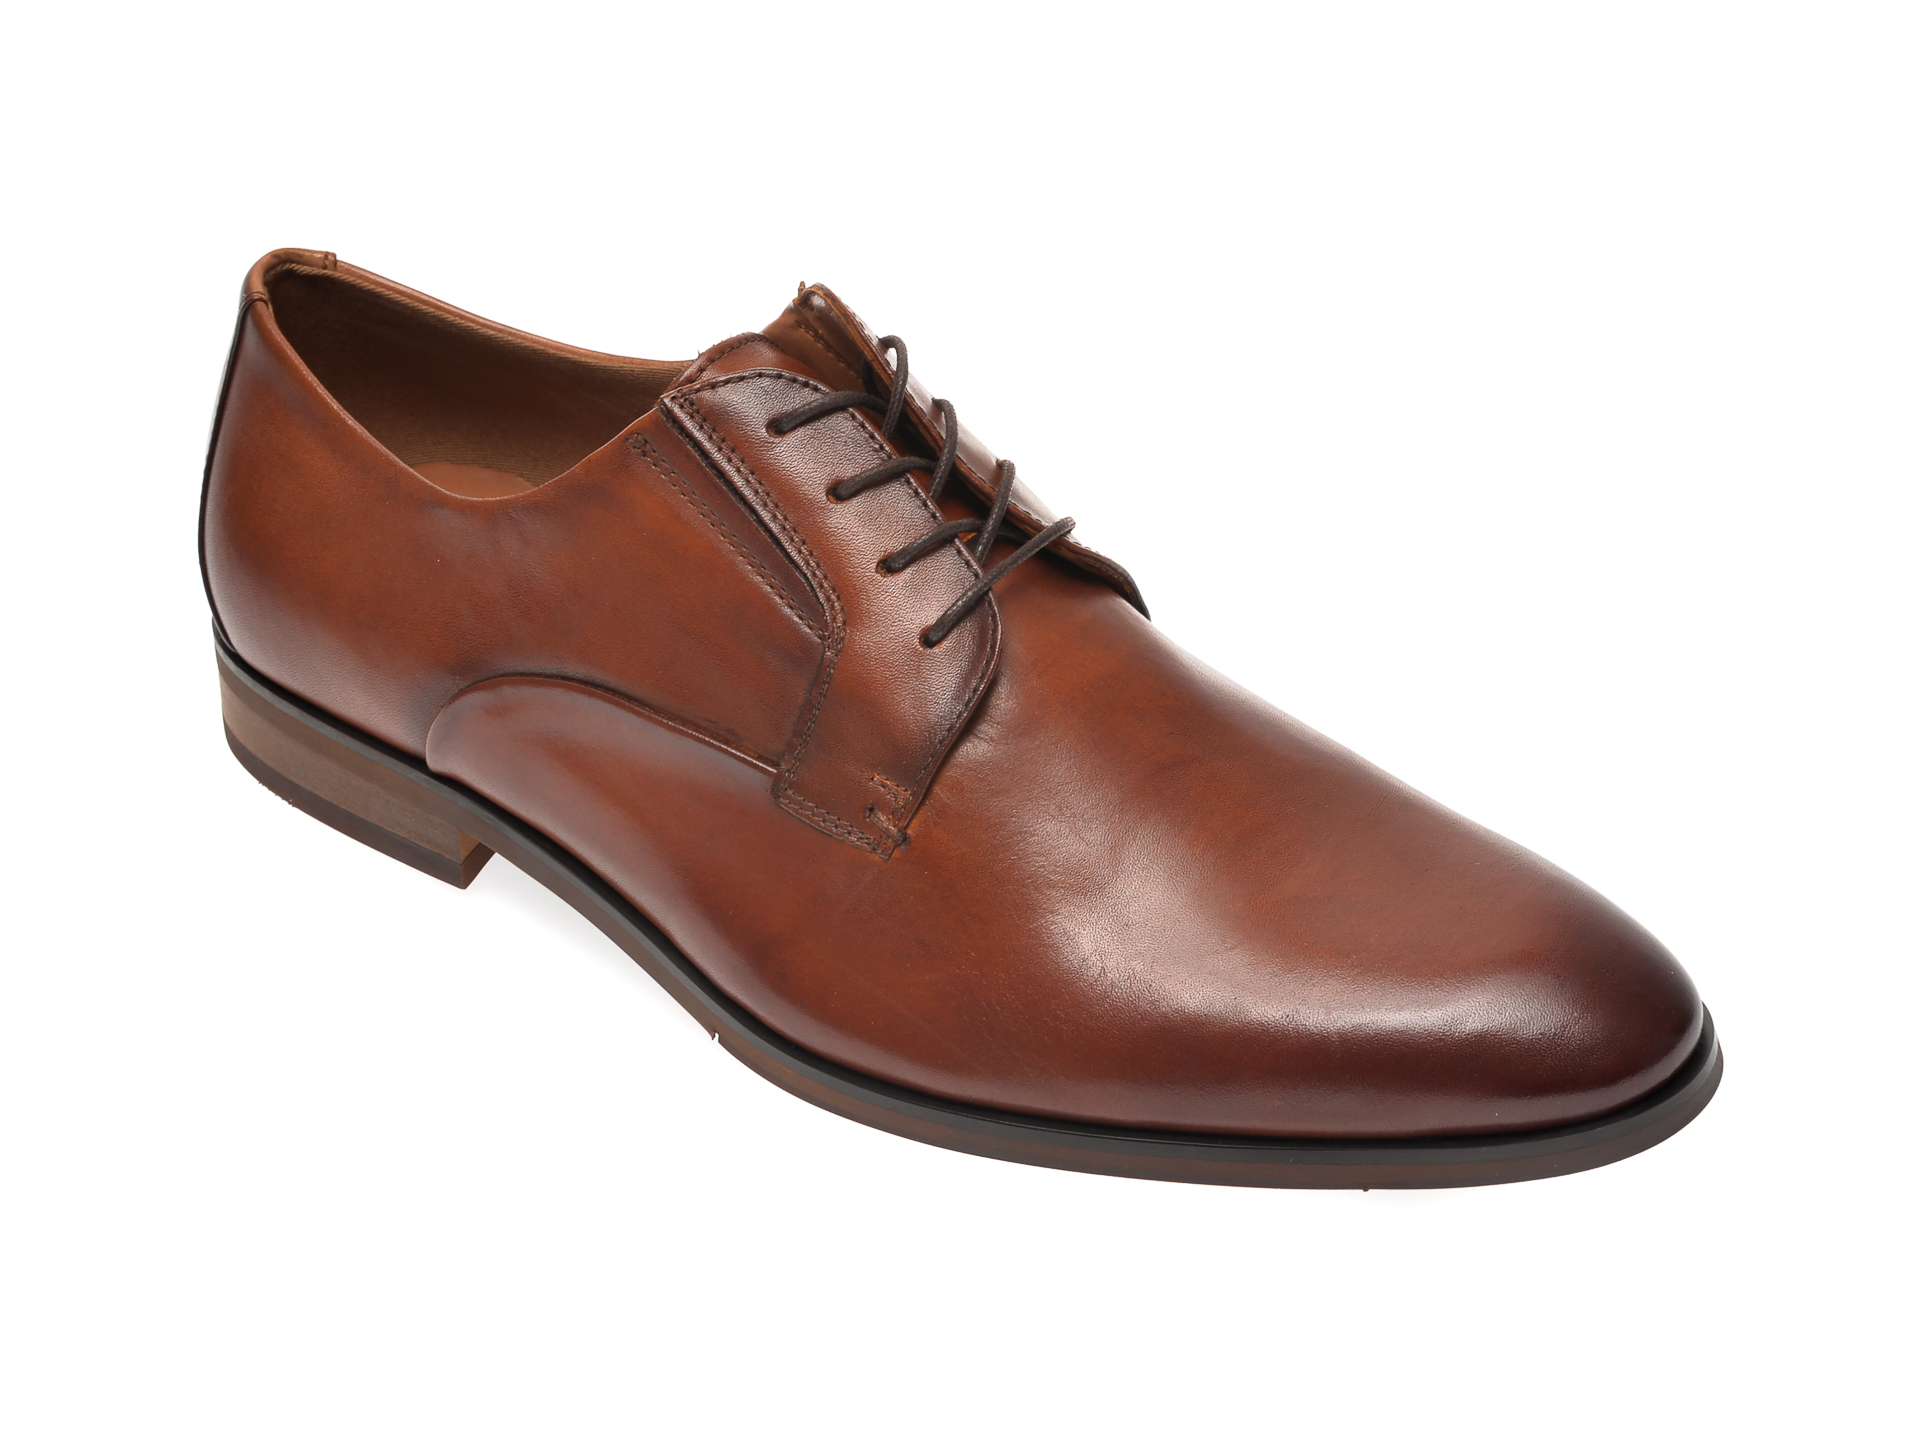 Pantofi ALDO maro, Eowelalian220, din piele naturala imagine